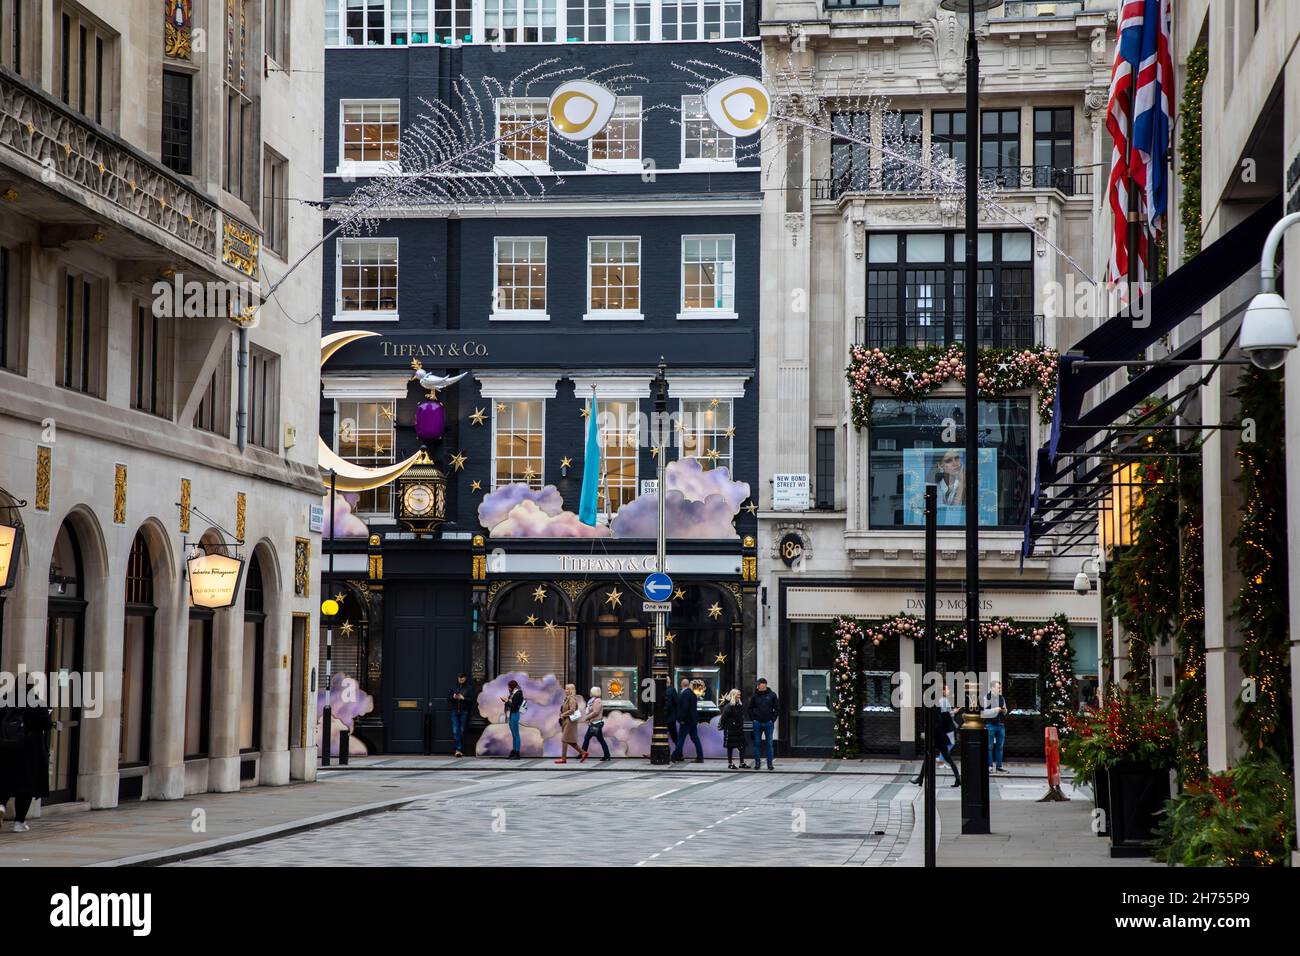 Londres, Royaume-Uni - 20 novembre 2021 : les boutiques sont décorées pour Noël dans un quartier élégant de New Bond Street. Banque D'Images